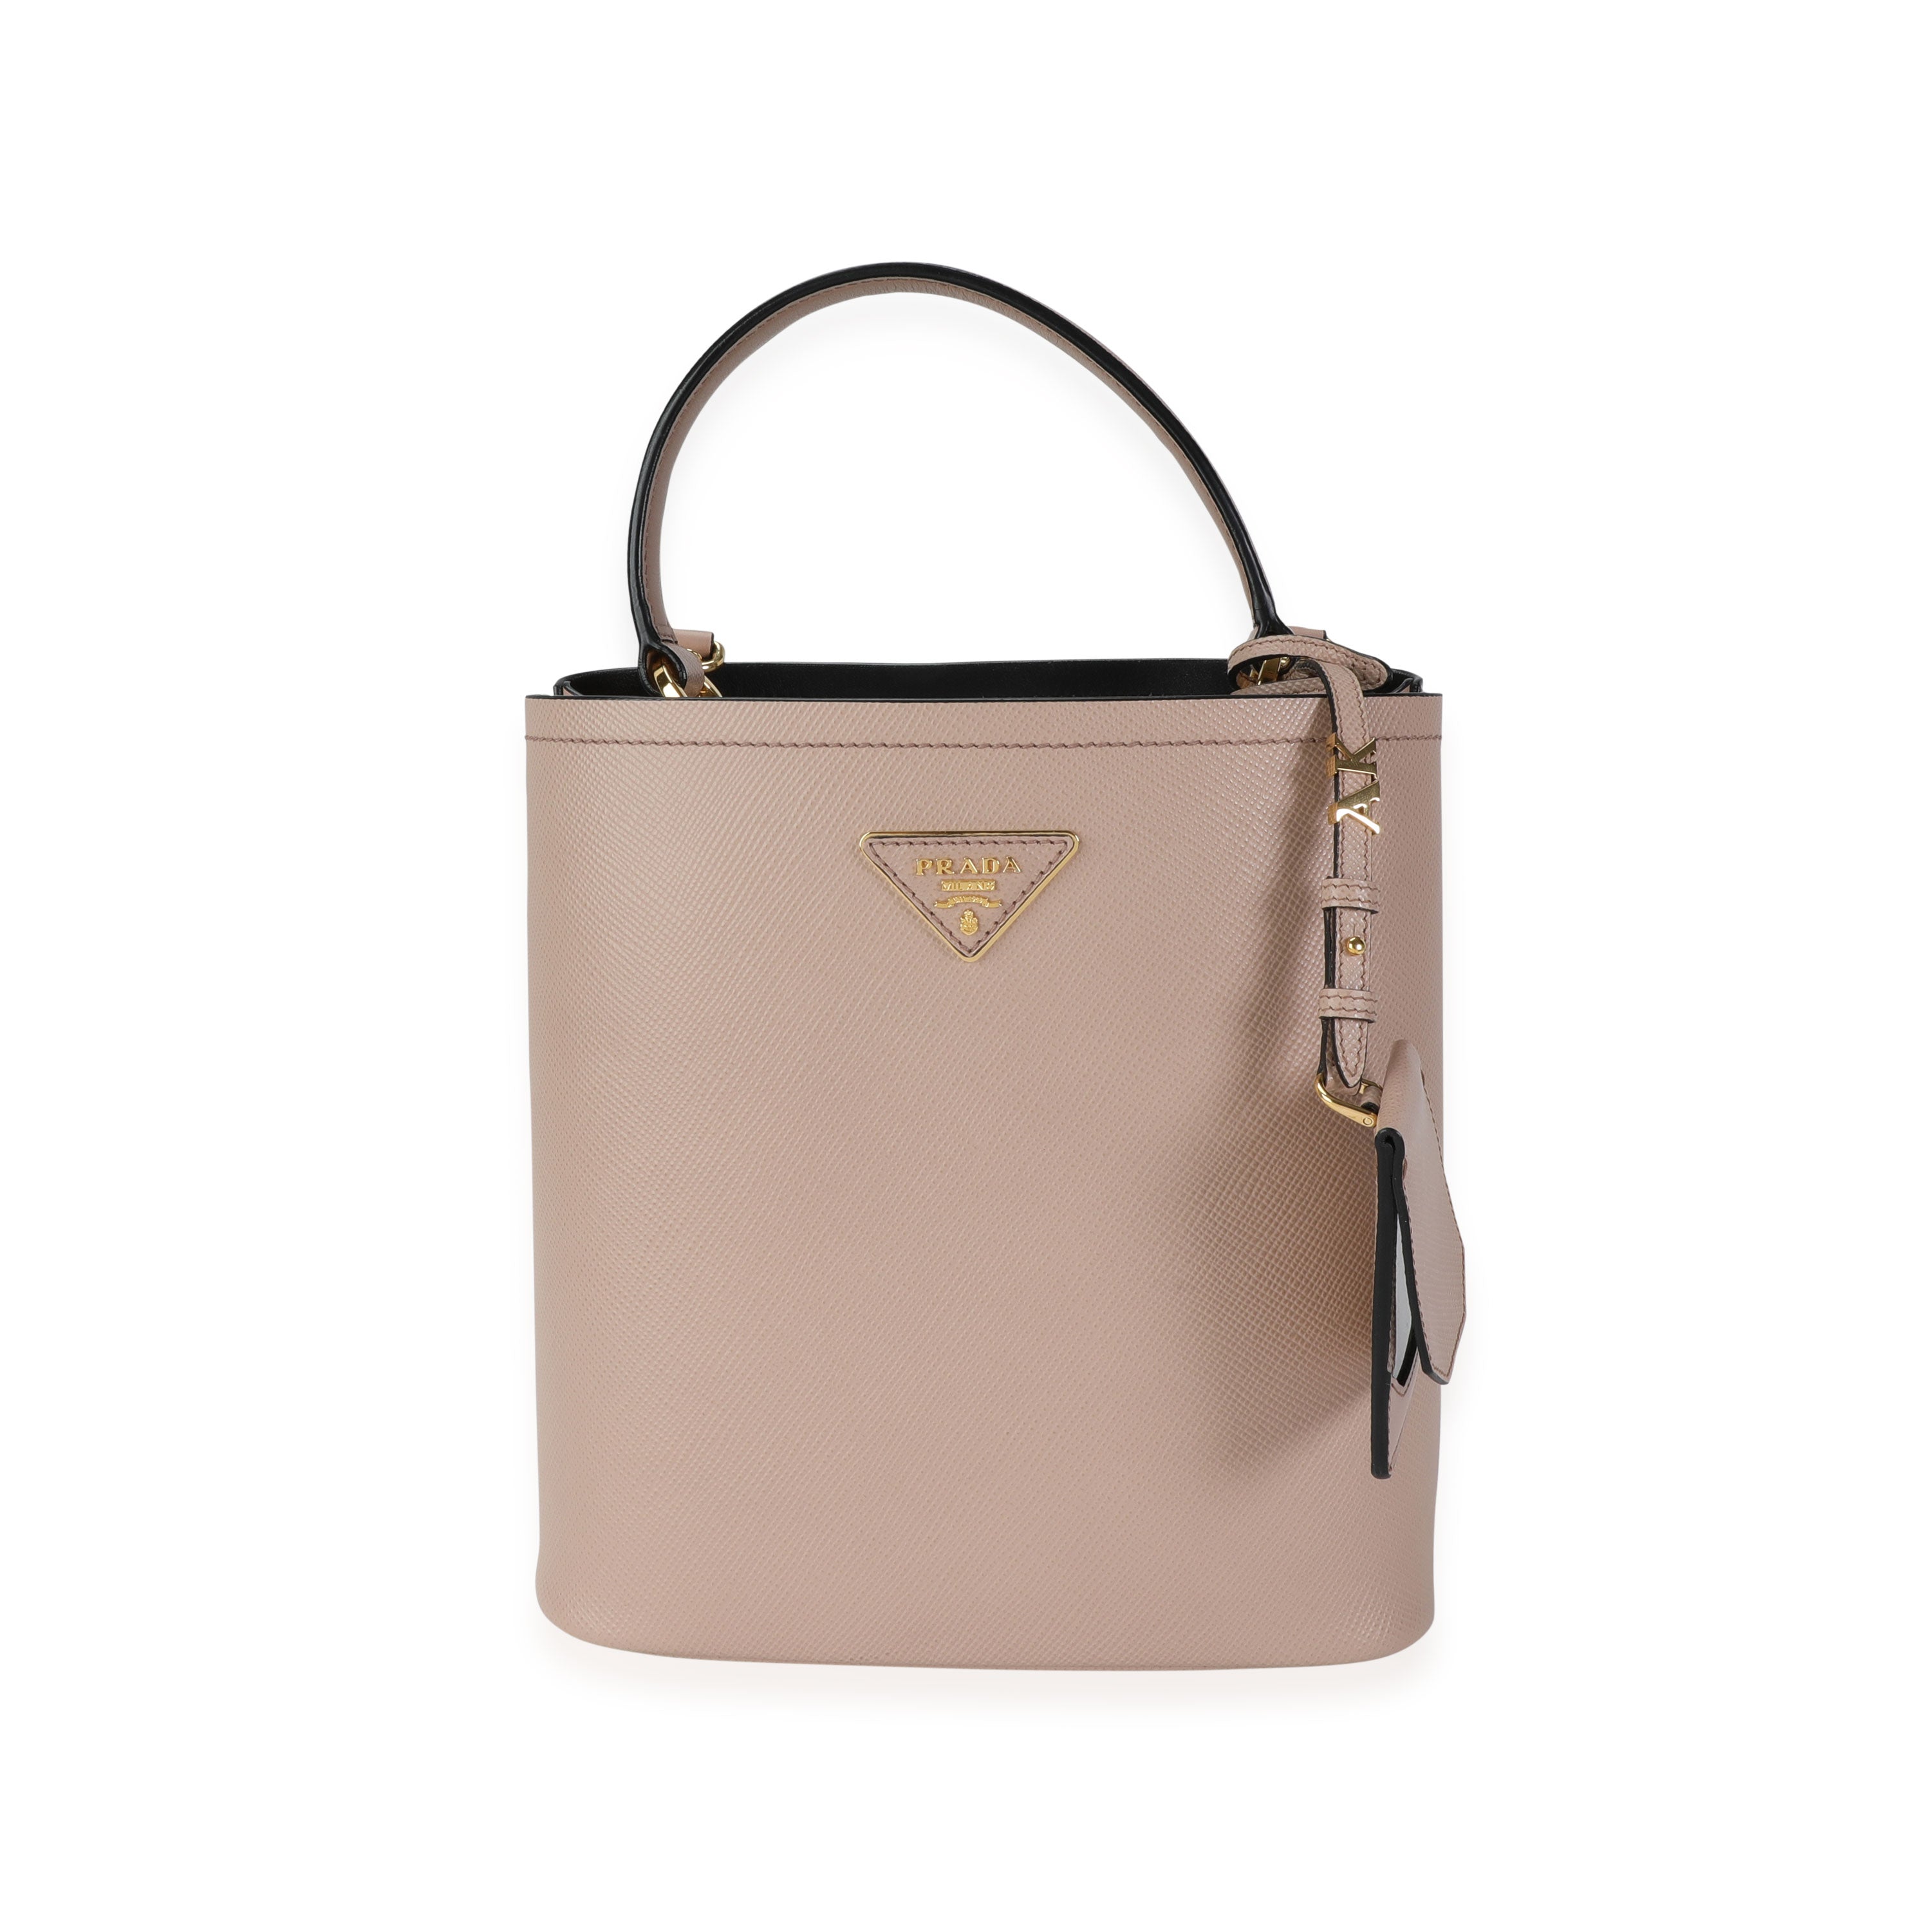 Prada, Bags, 0 Authentic Brand New Small Saffiano Leather Prada Panier Bag